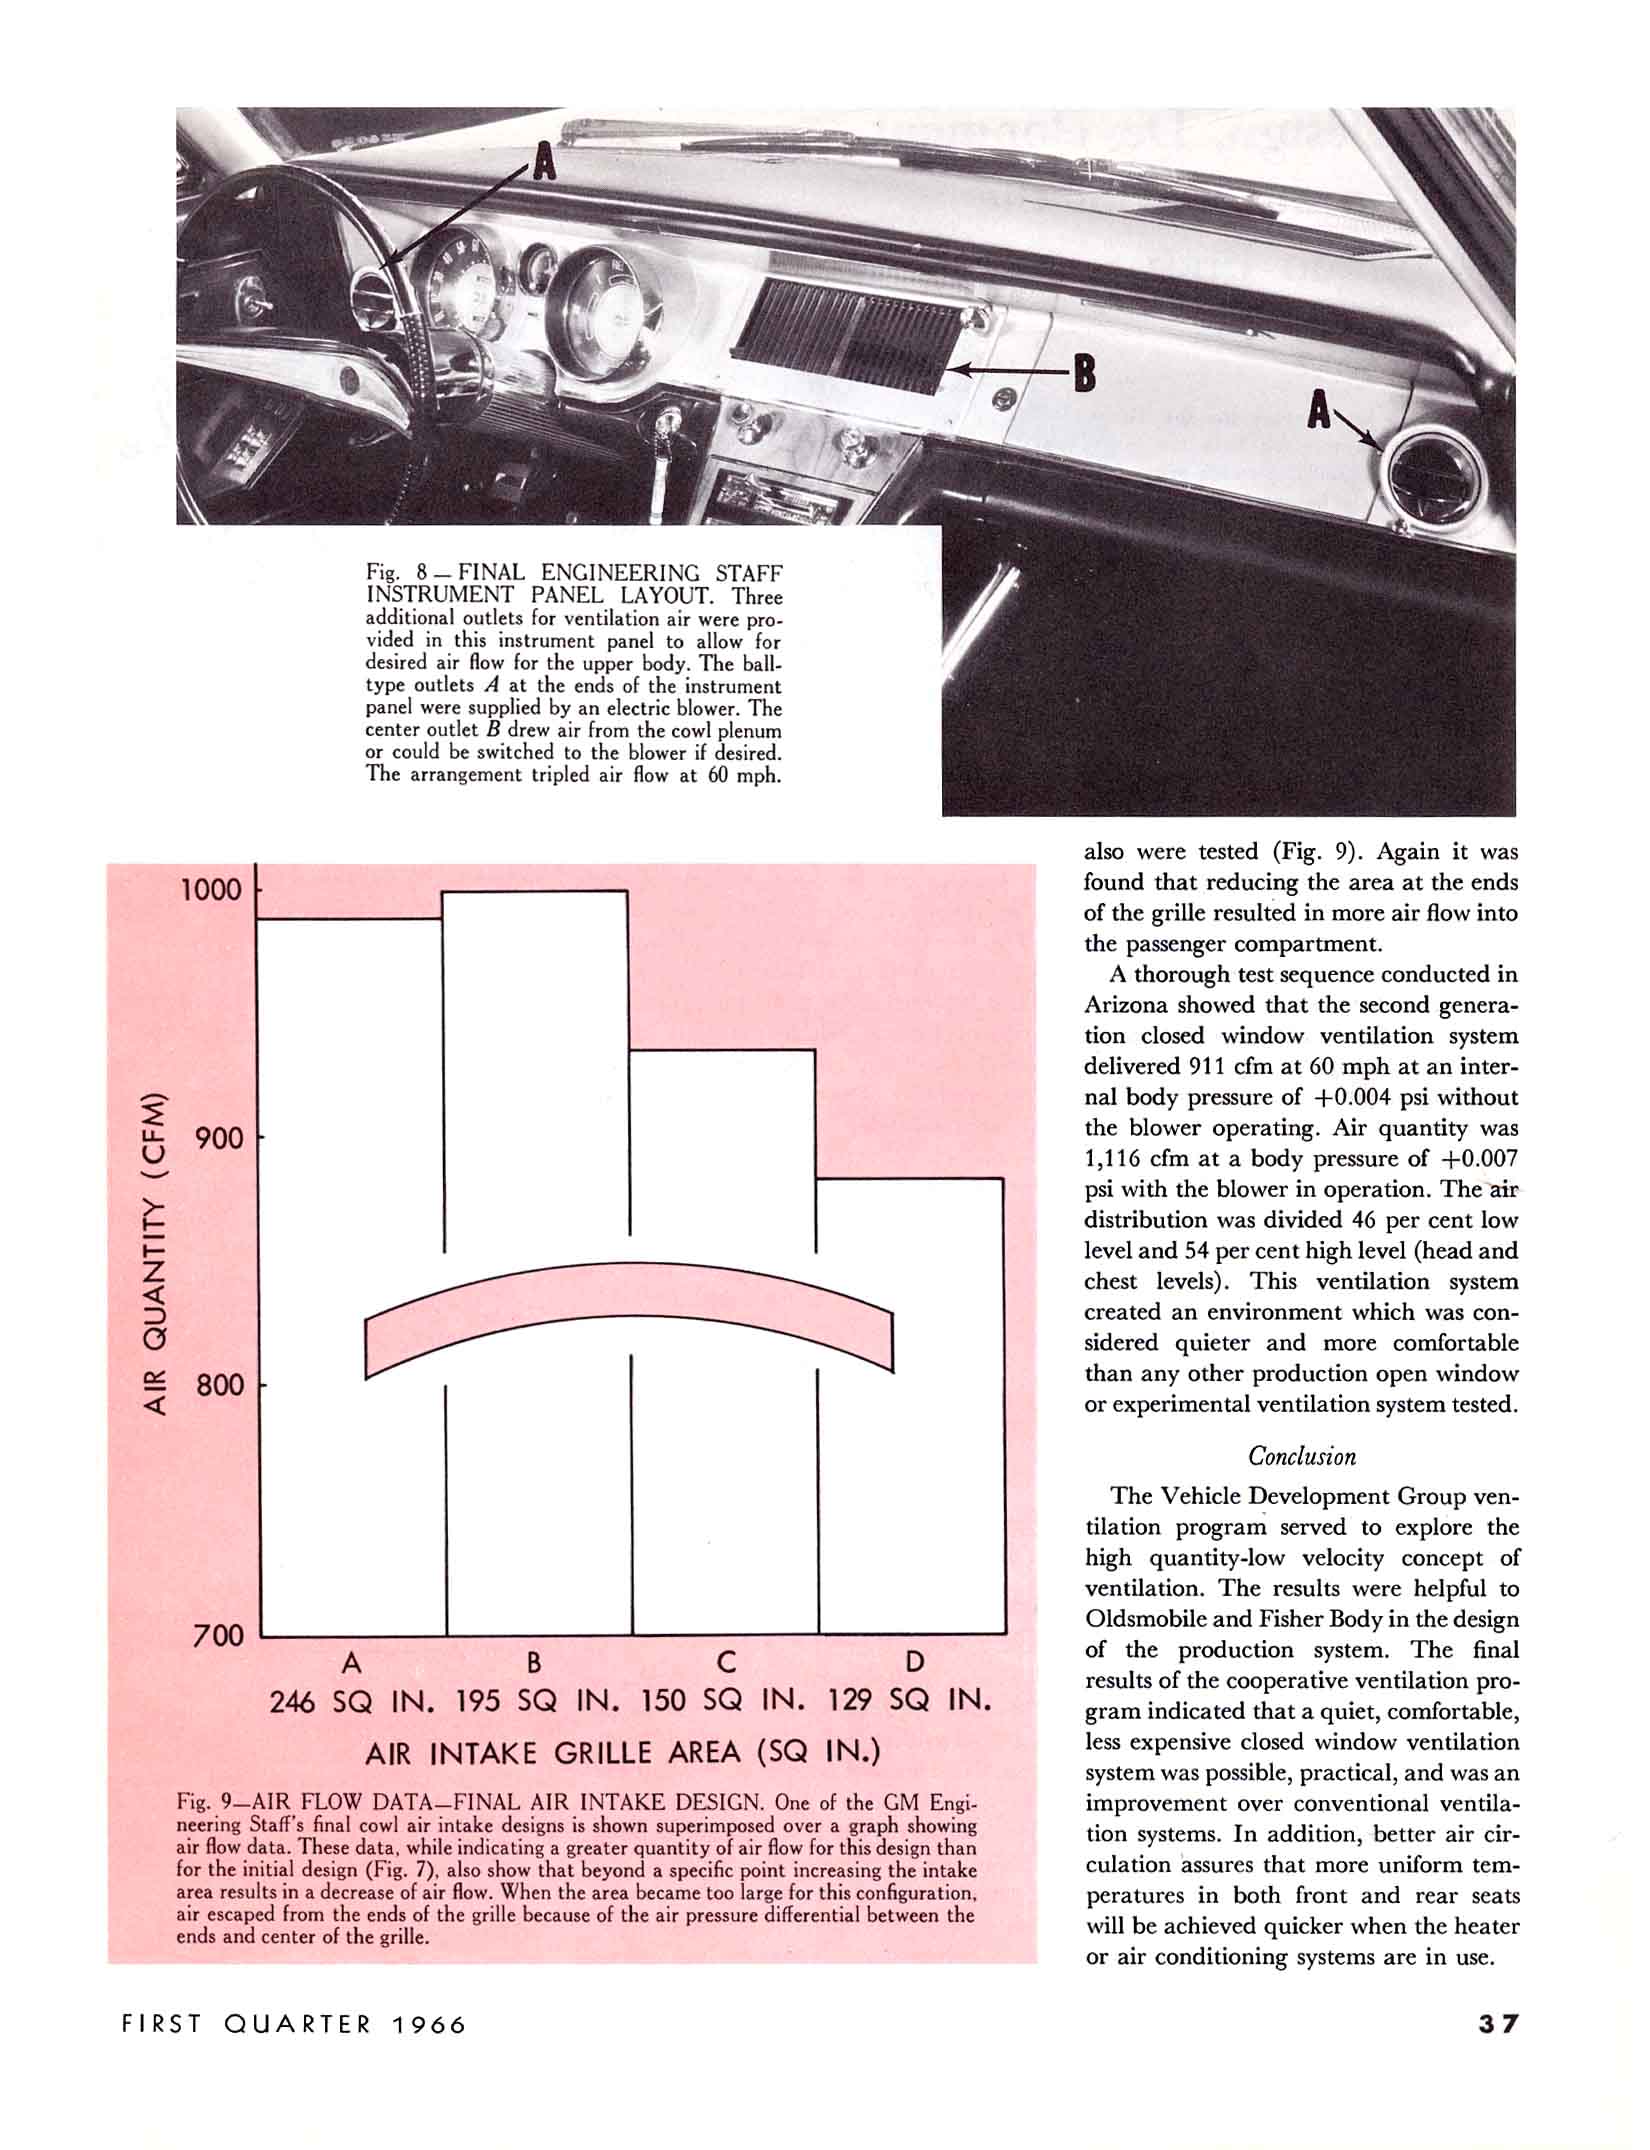 1966_GM_Eng_Journal_Qtr1-37